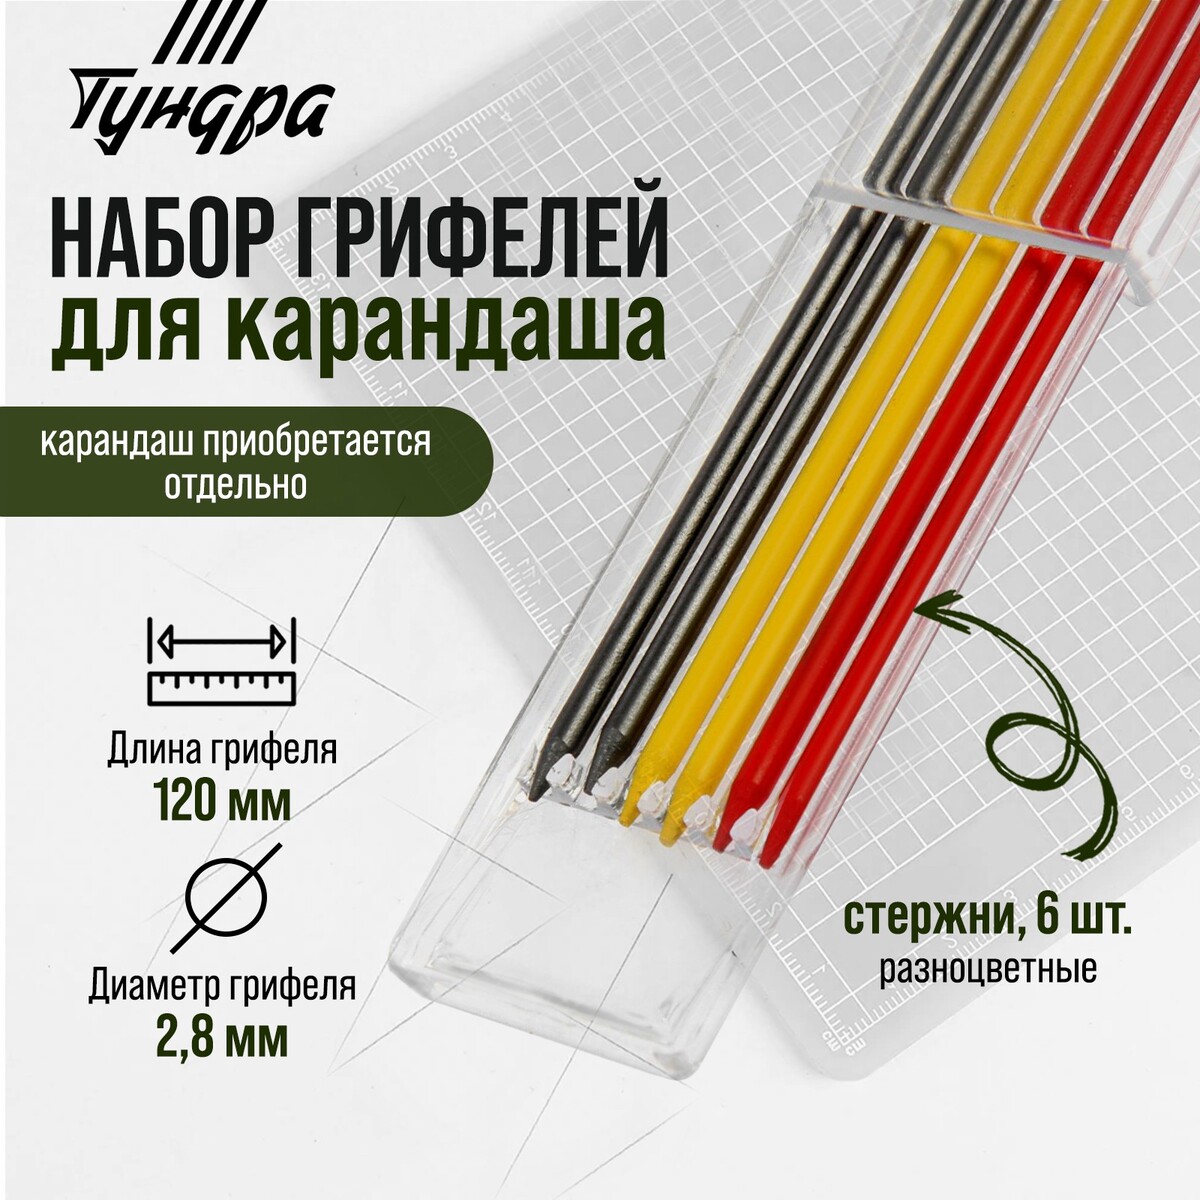 Набор грифелей для карандаша тундра, цветные (черные, красные, желтые), 120 мм, 6 штук награда для генерала красные пески